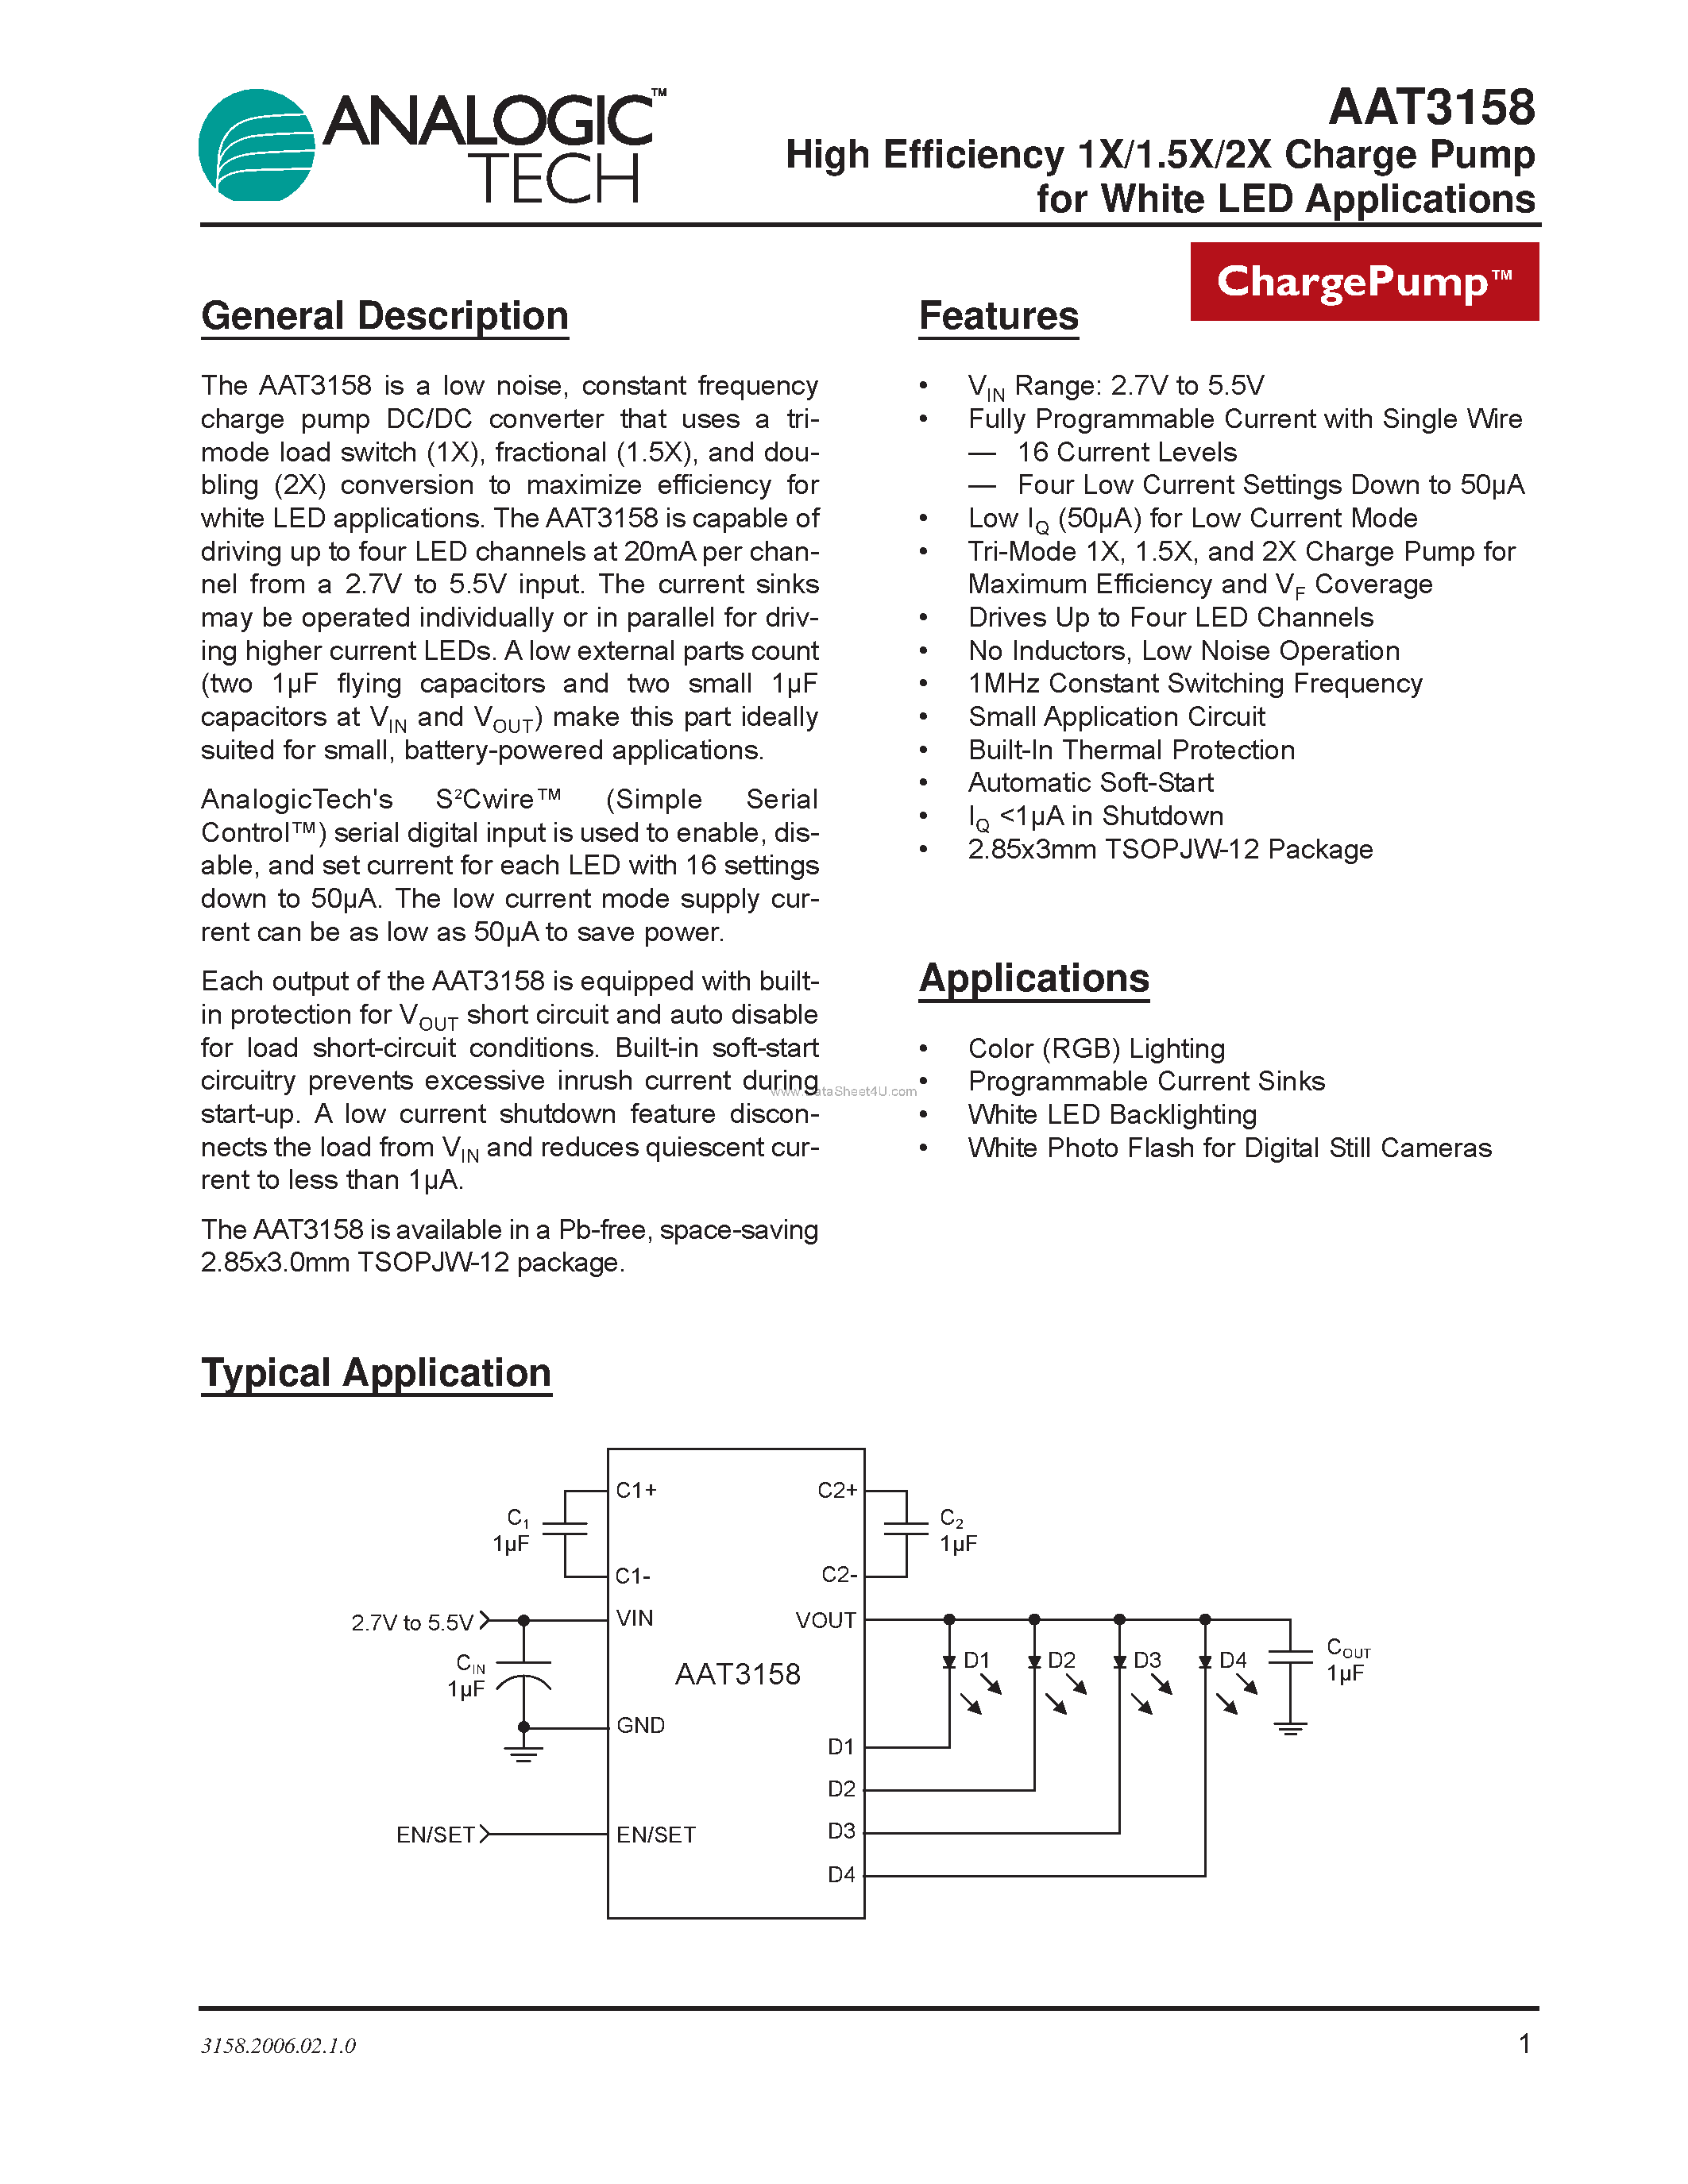 Даташит AAT3158 - High Efficiency 1X/1.5X/2X Charge Pump страница 1